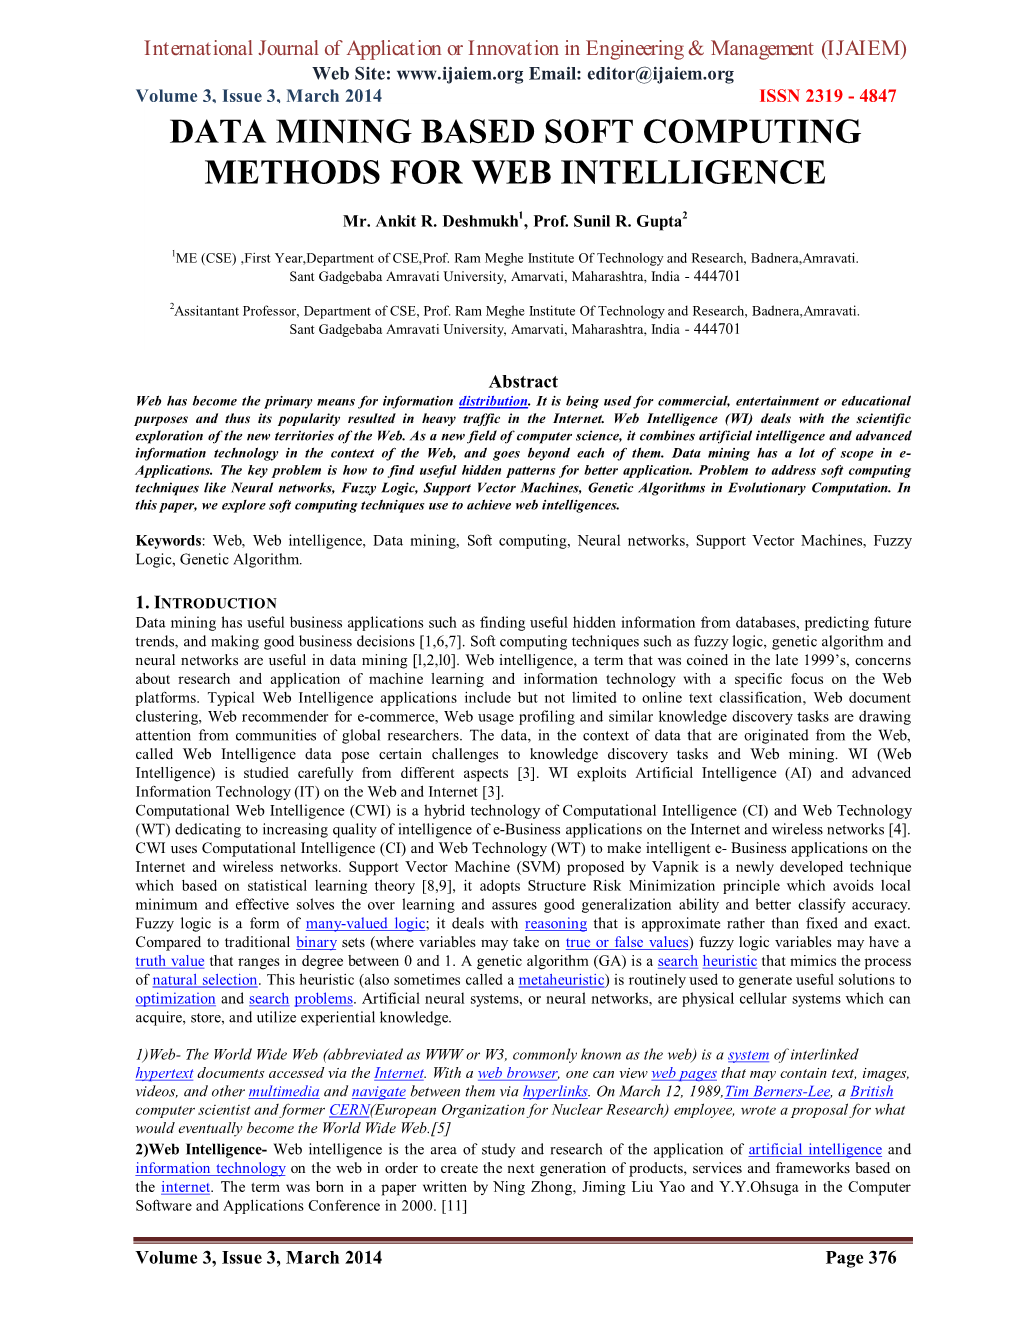 Data Mining Based Soft Computing Methods for Web Intelligence